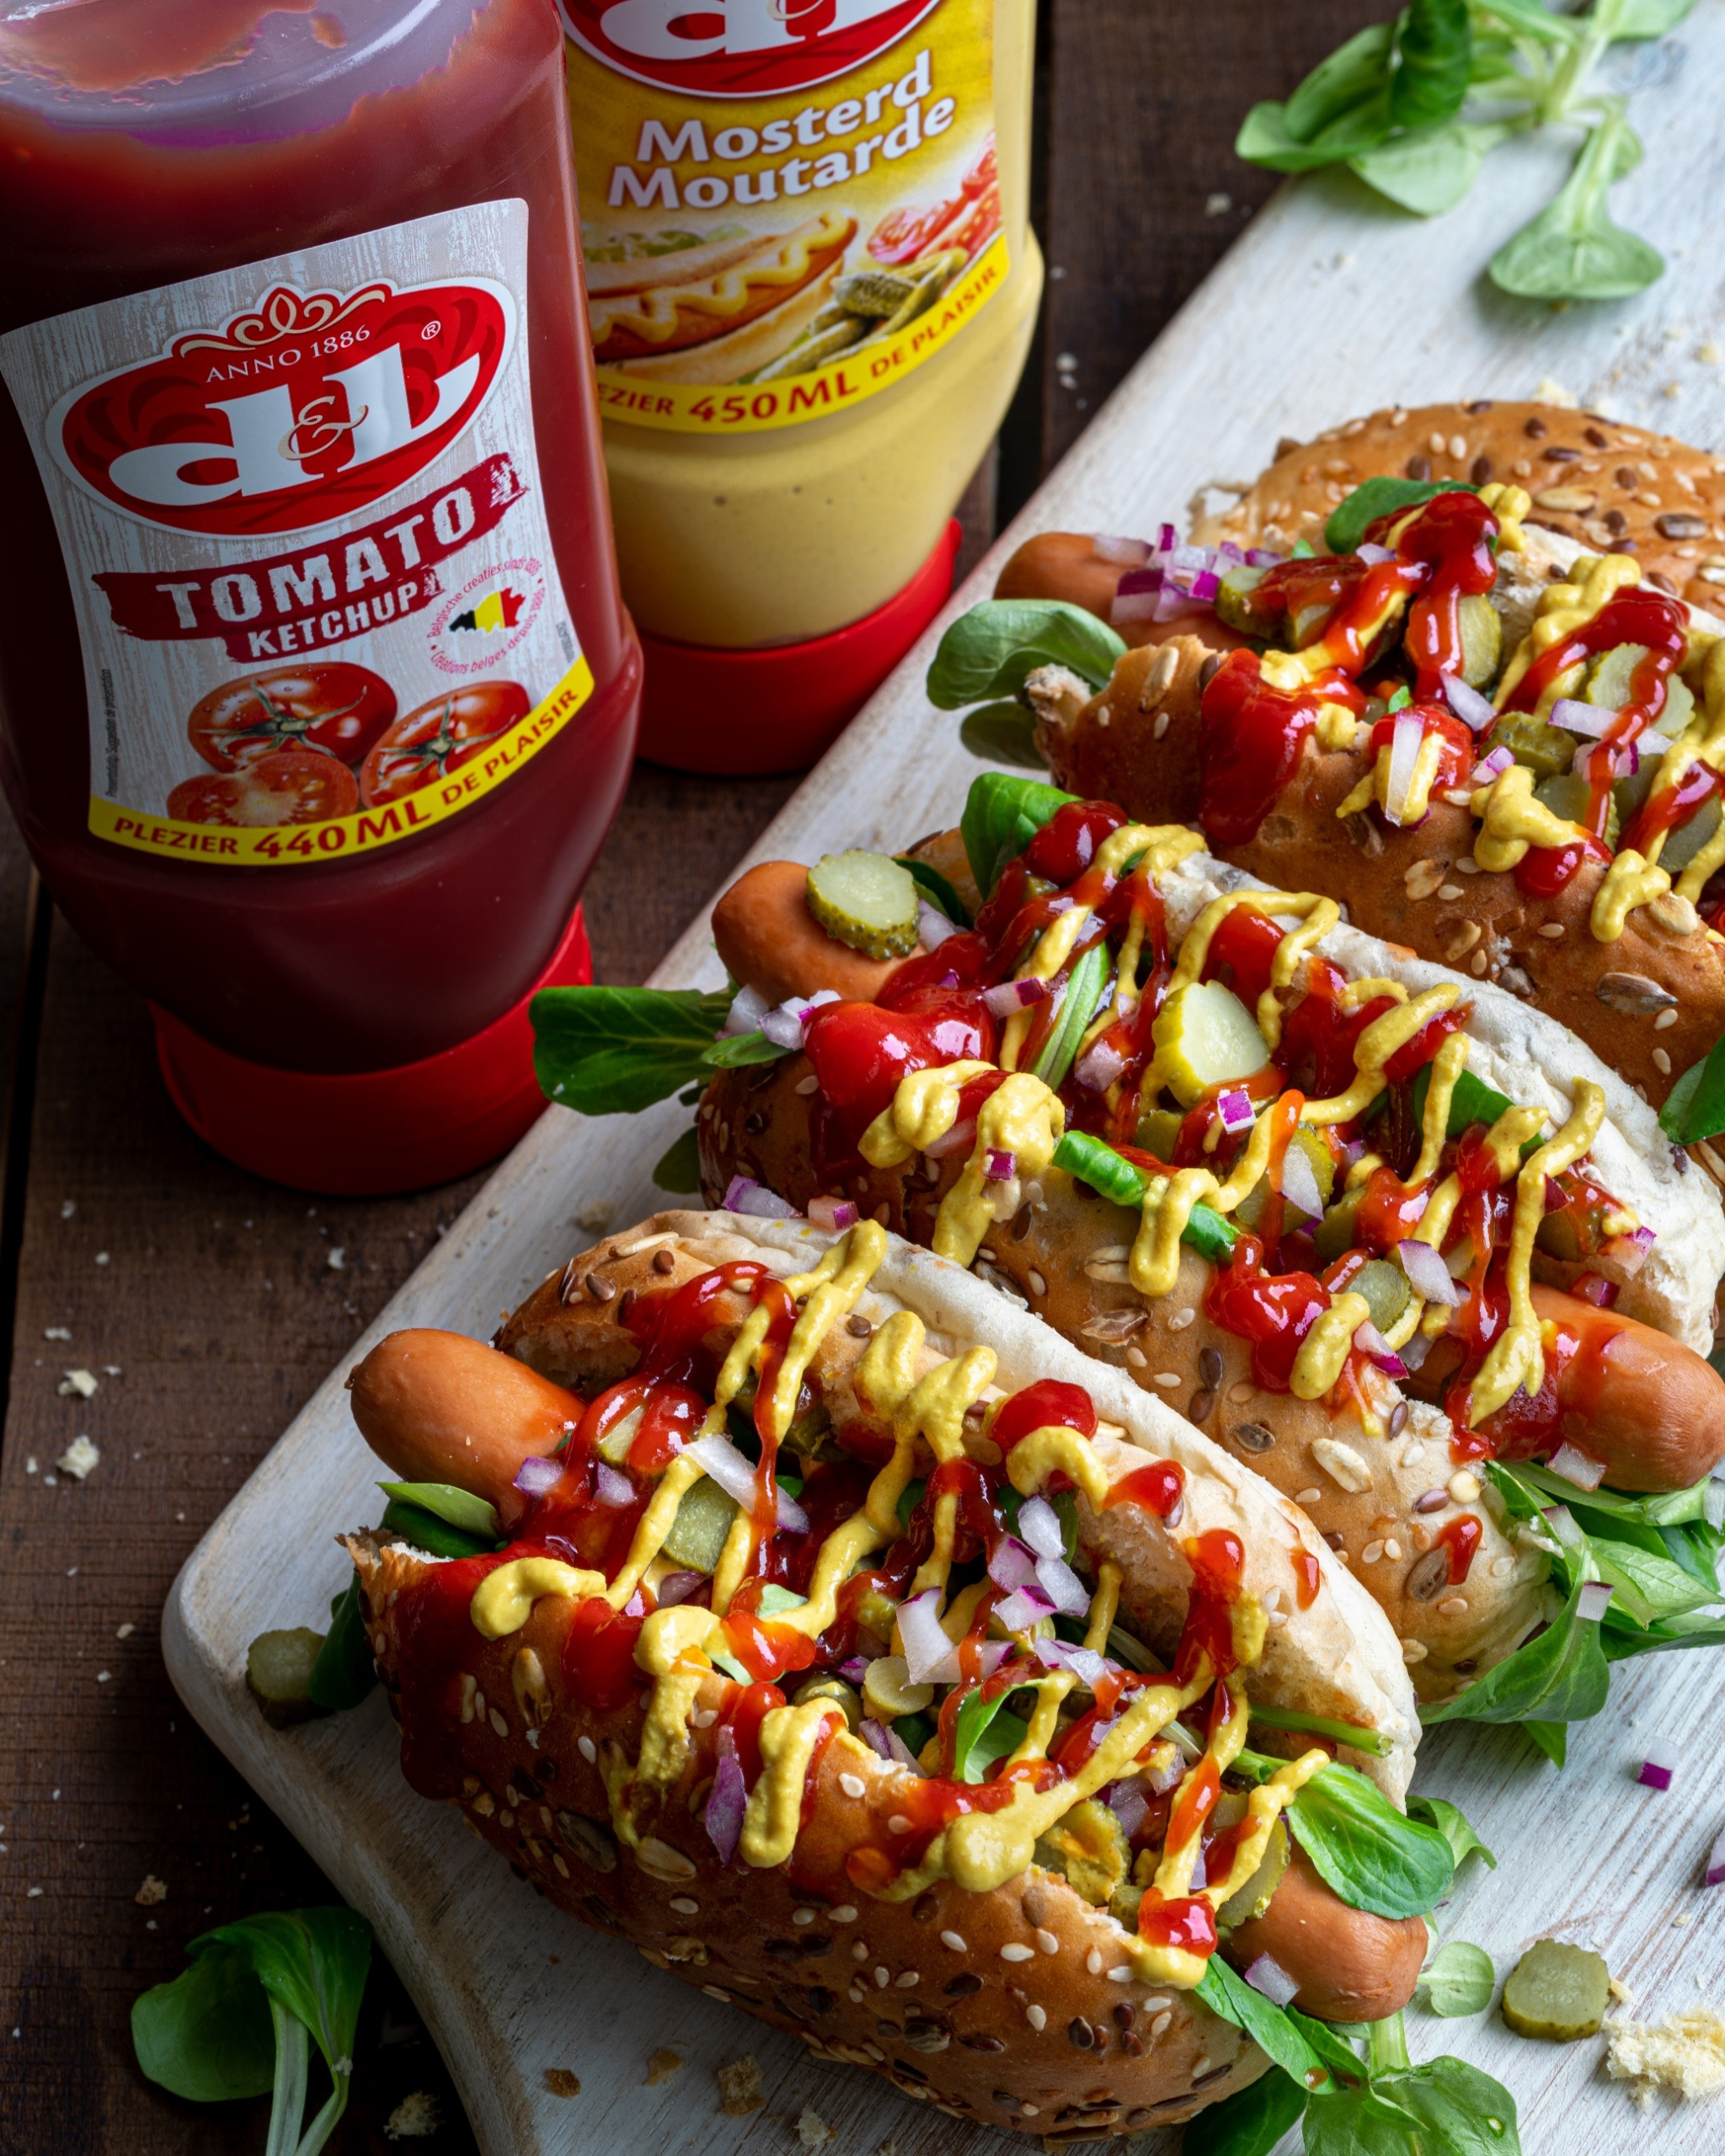 Hot dog classique avec moutarde et ketchup